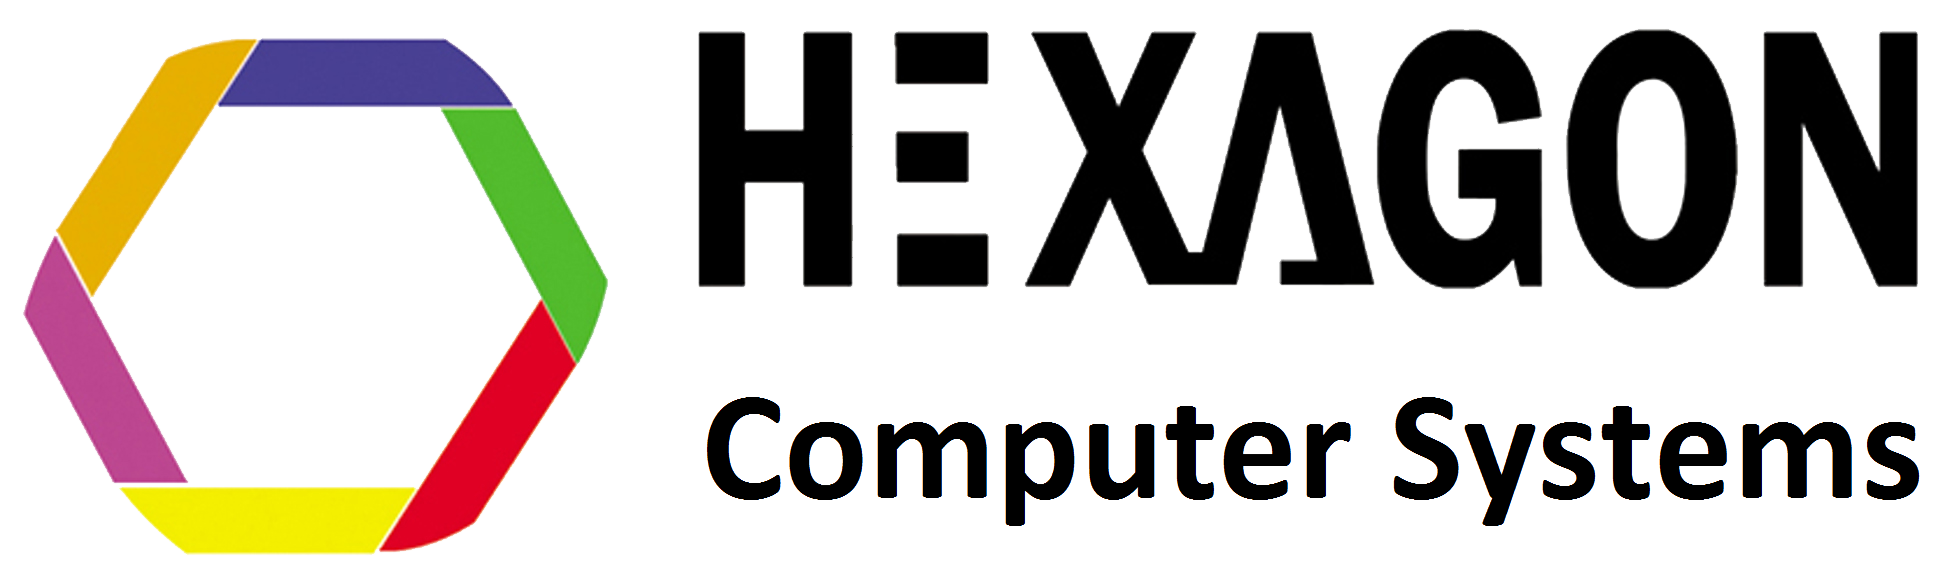 Hexagon Computer Systems